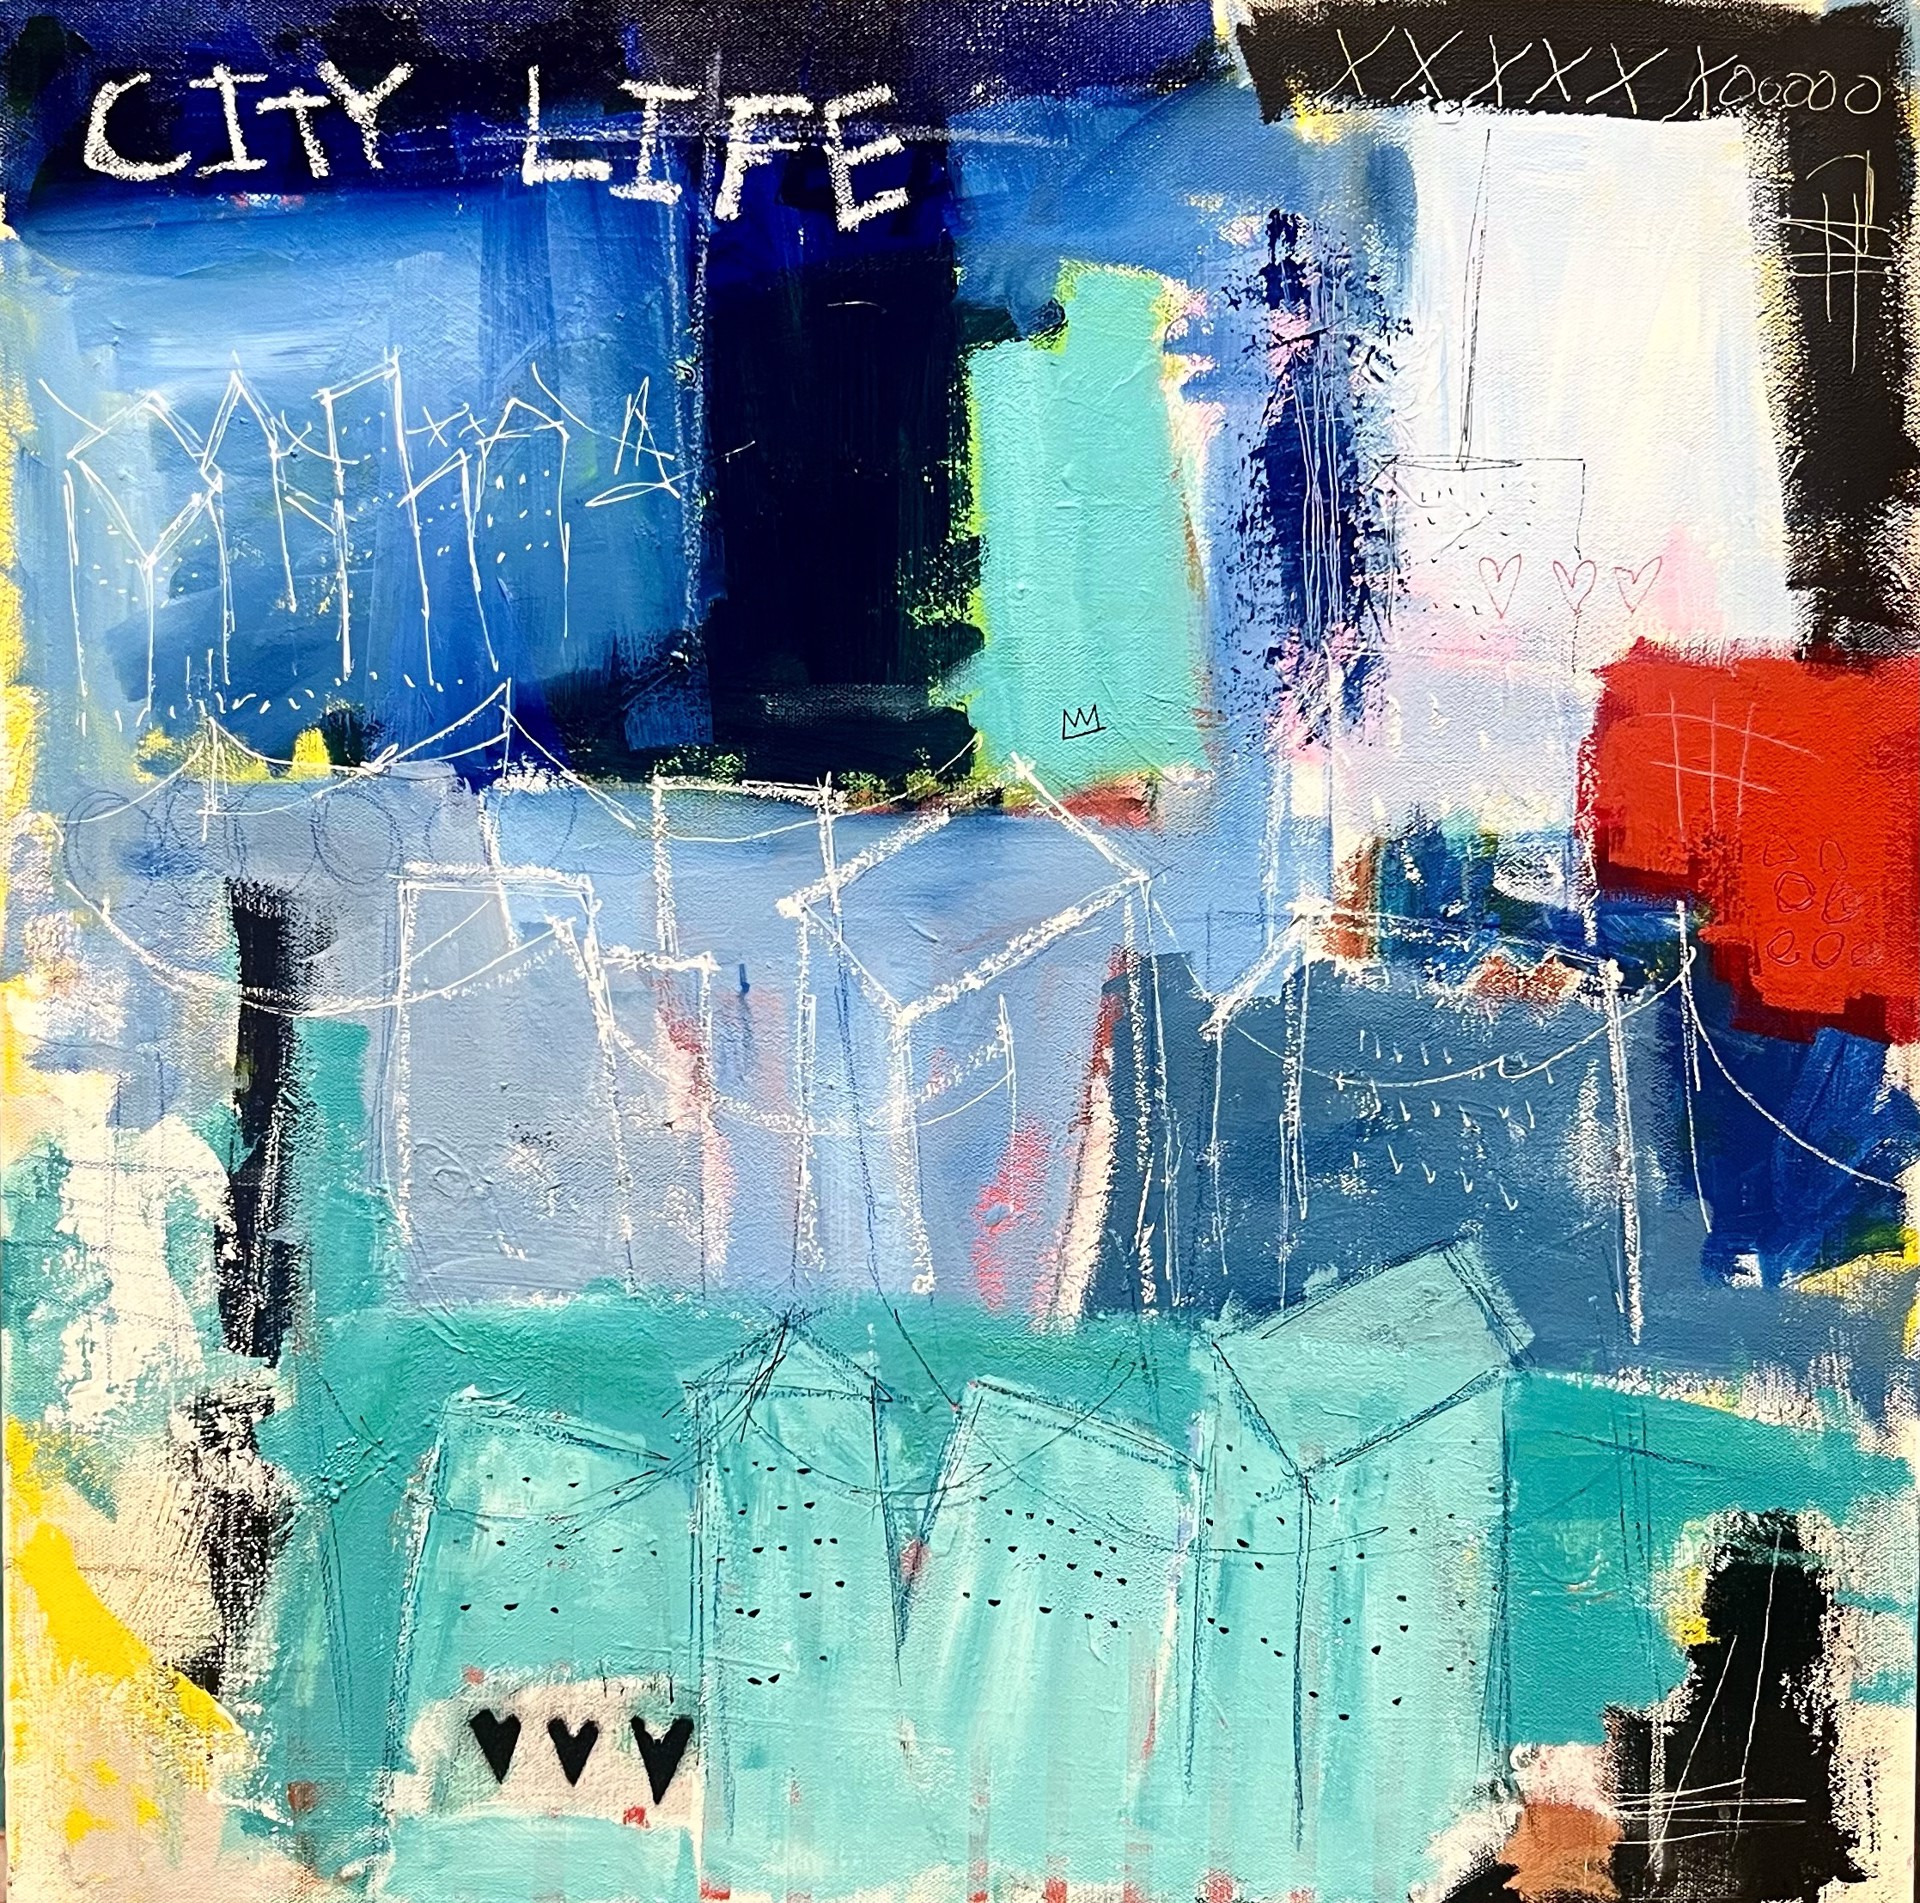 City Life by Rick Hamilton